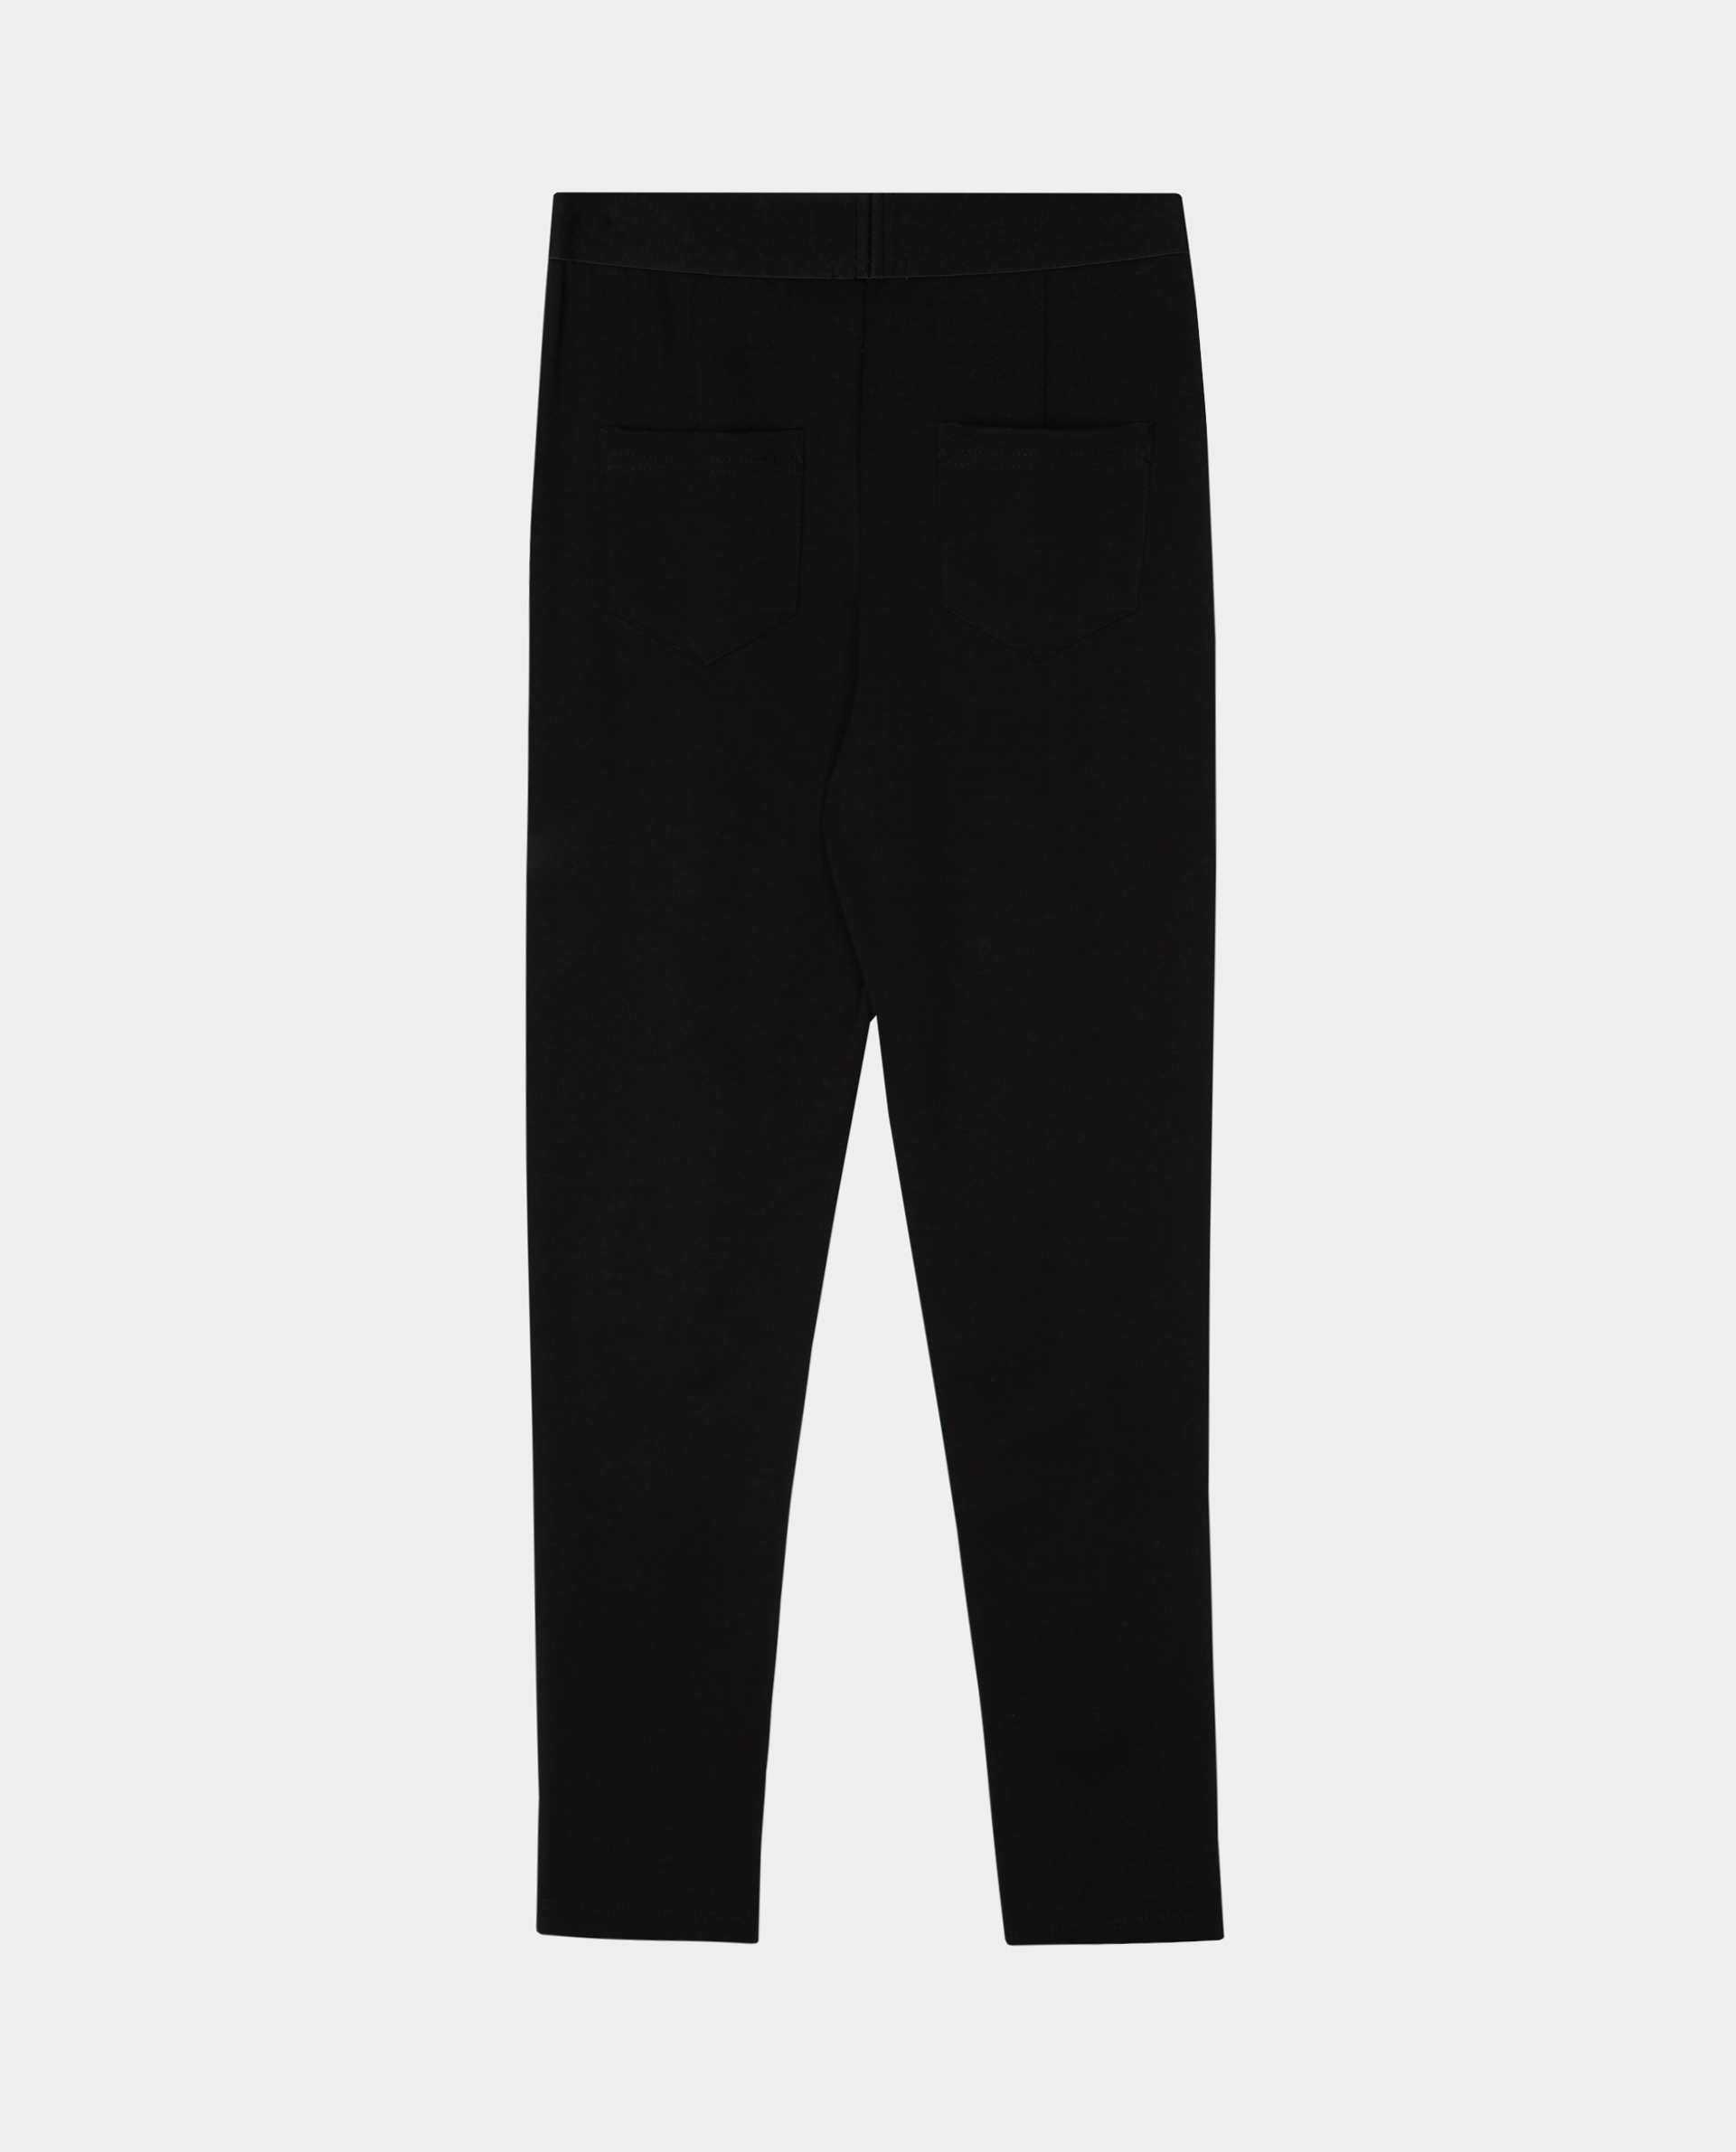 Черные брюки из джерси Gulliver 220GSGC5601, размер 158, цвет черный regular fit / прямые - фото 5